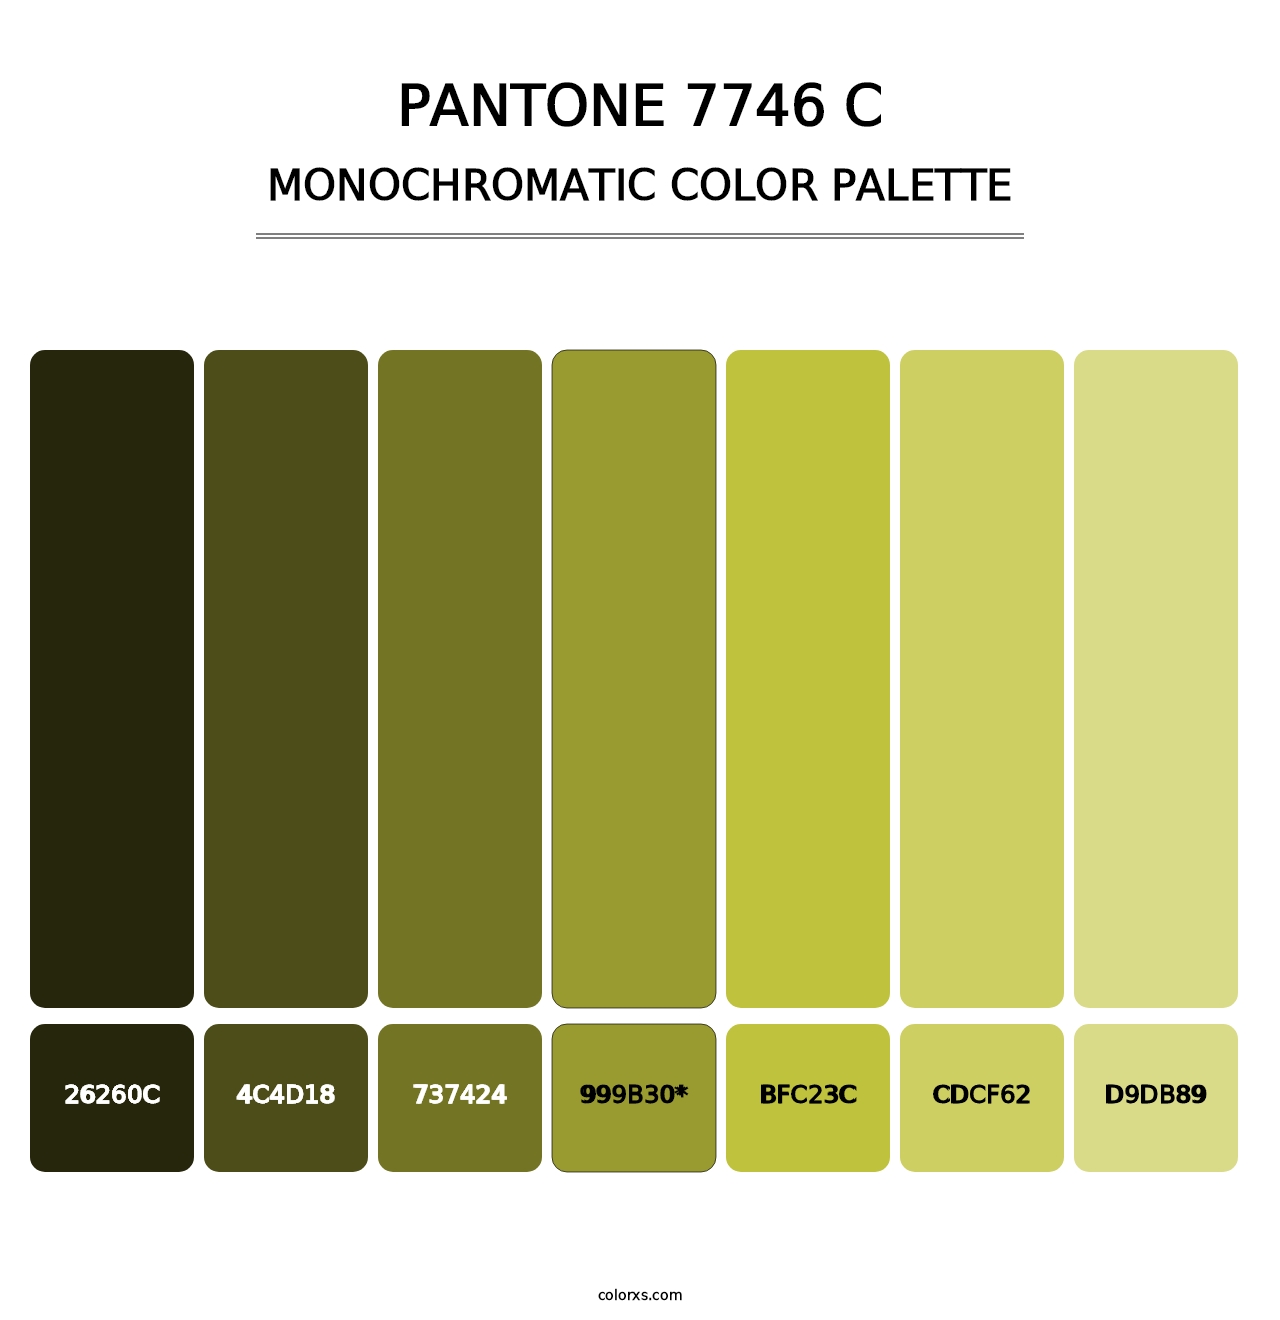 PANTONE 7746 C - Monochromatic Color Palette